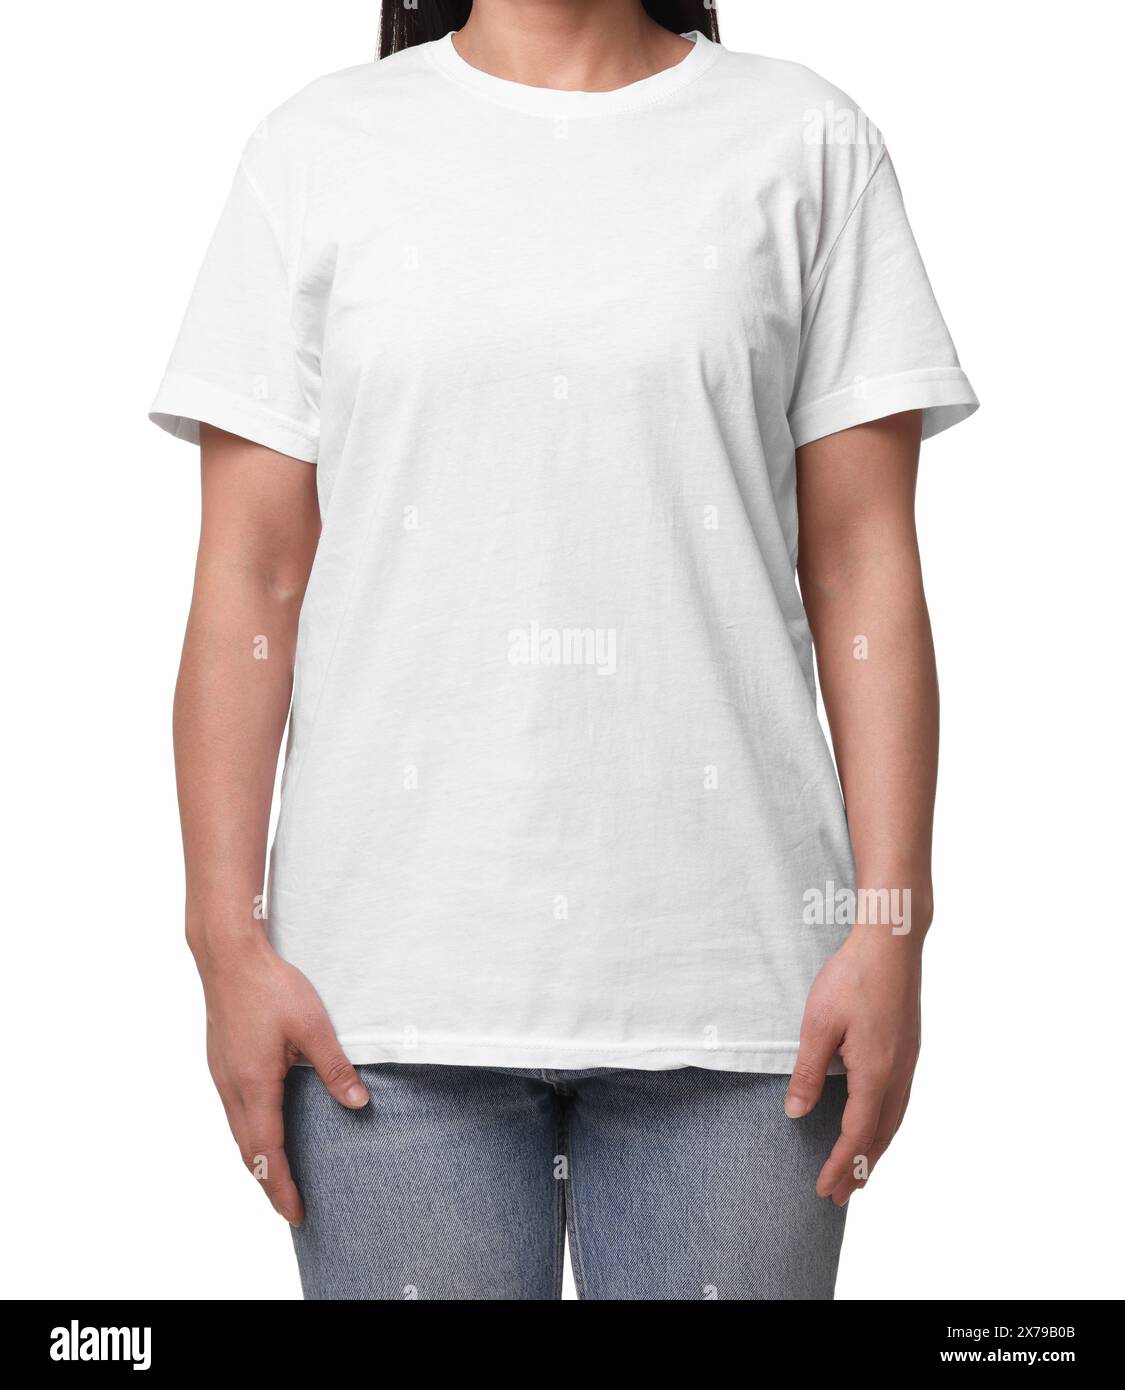 Woman wearing stylish t-shirt on white background, closeup Stock Photo